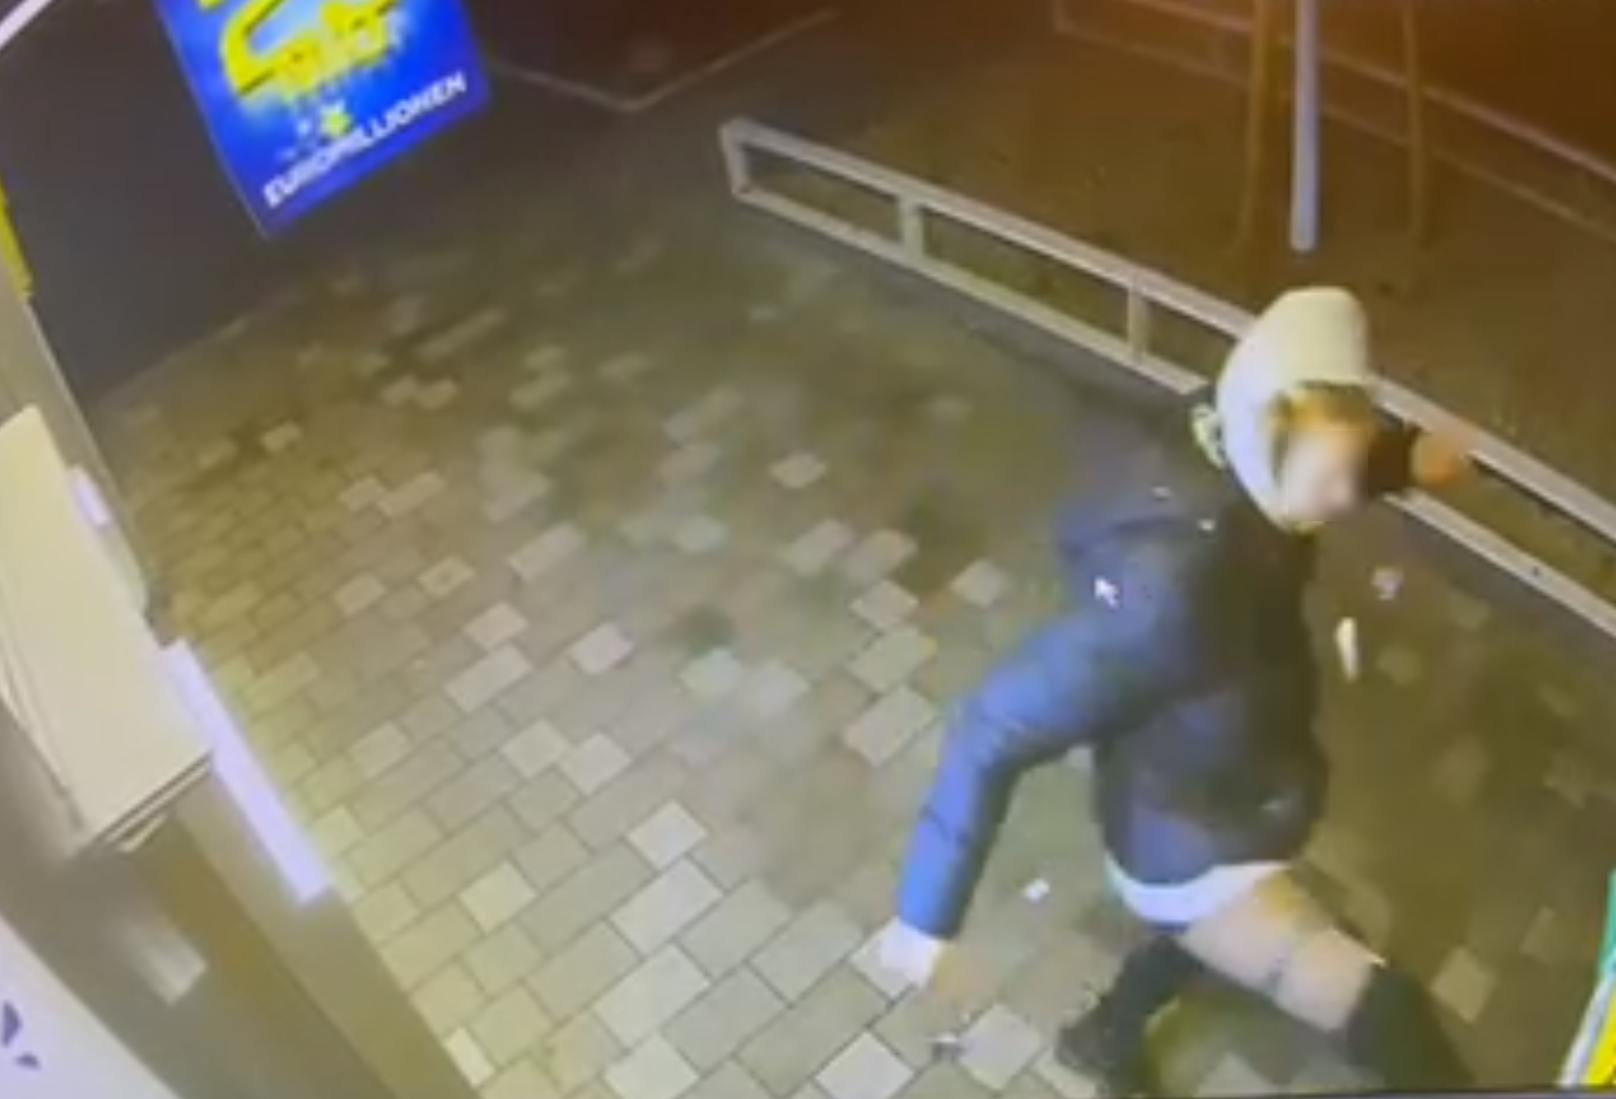 Zuerst schlug eine Frau mit dem rechten Bein grundlos in eine Holzabgrenzung der Pizzeria.